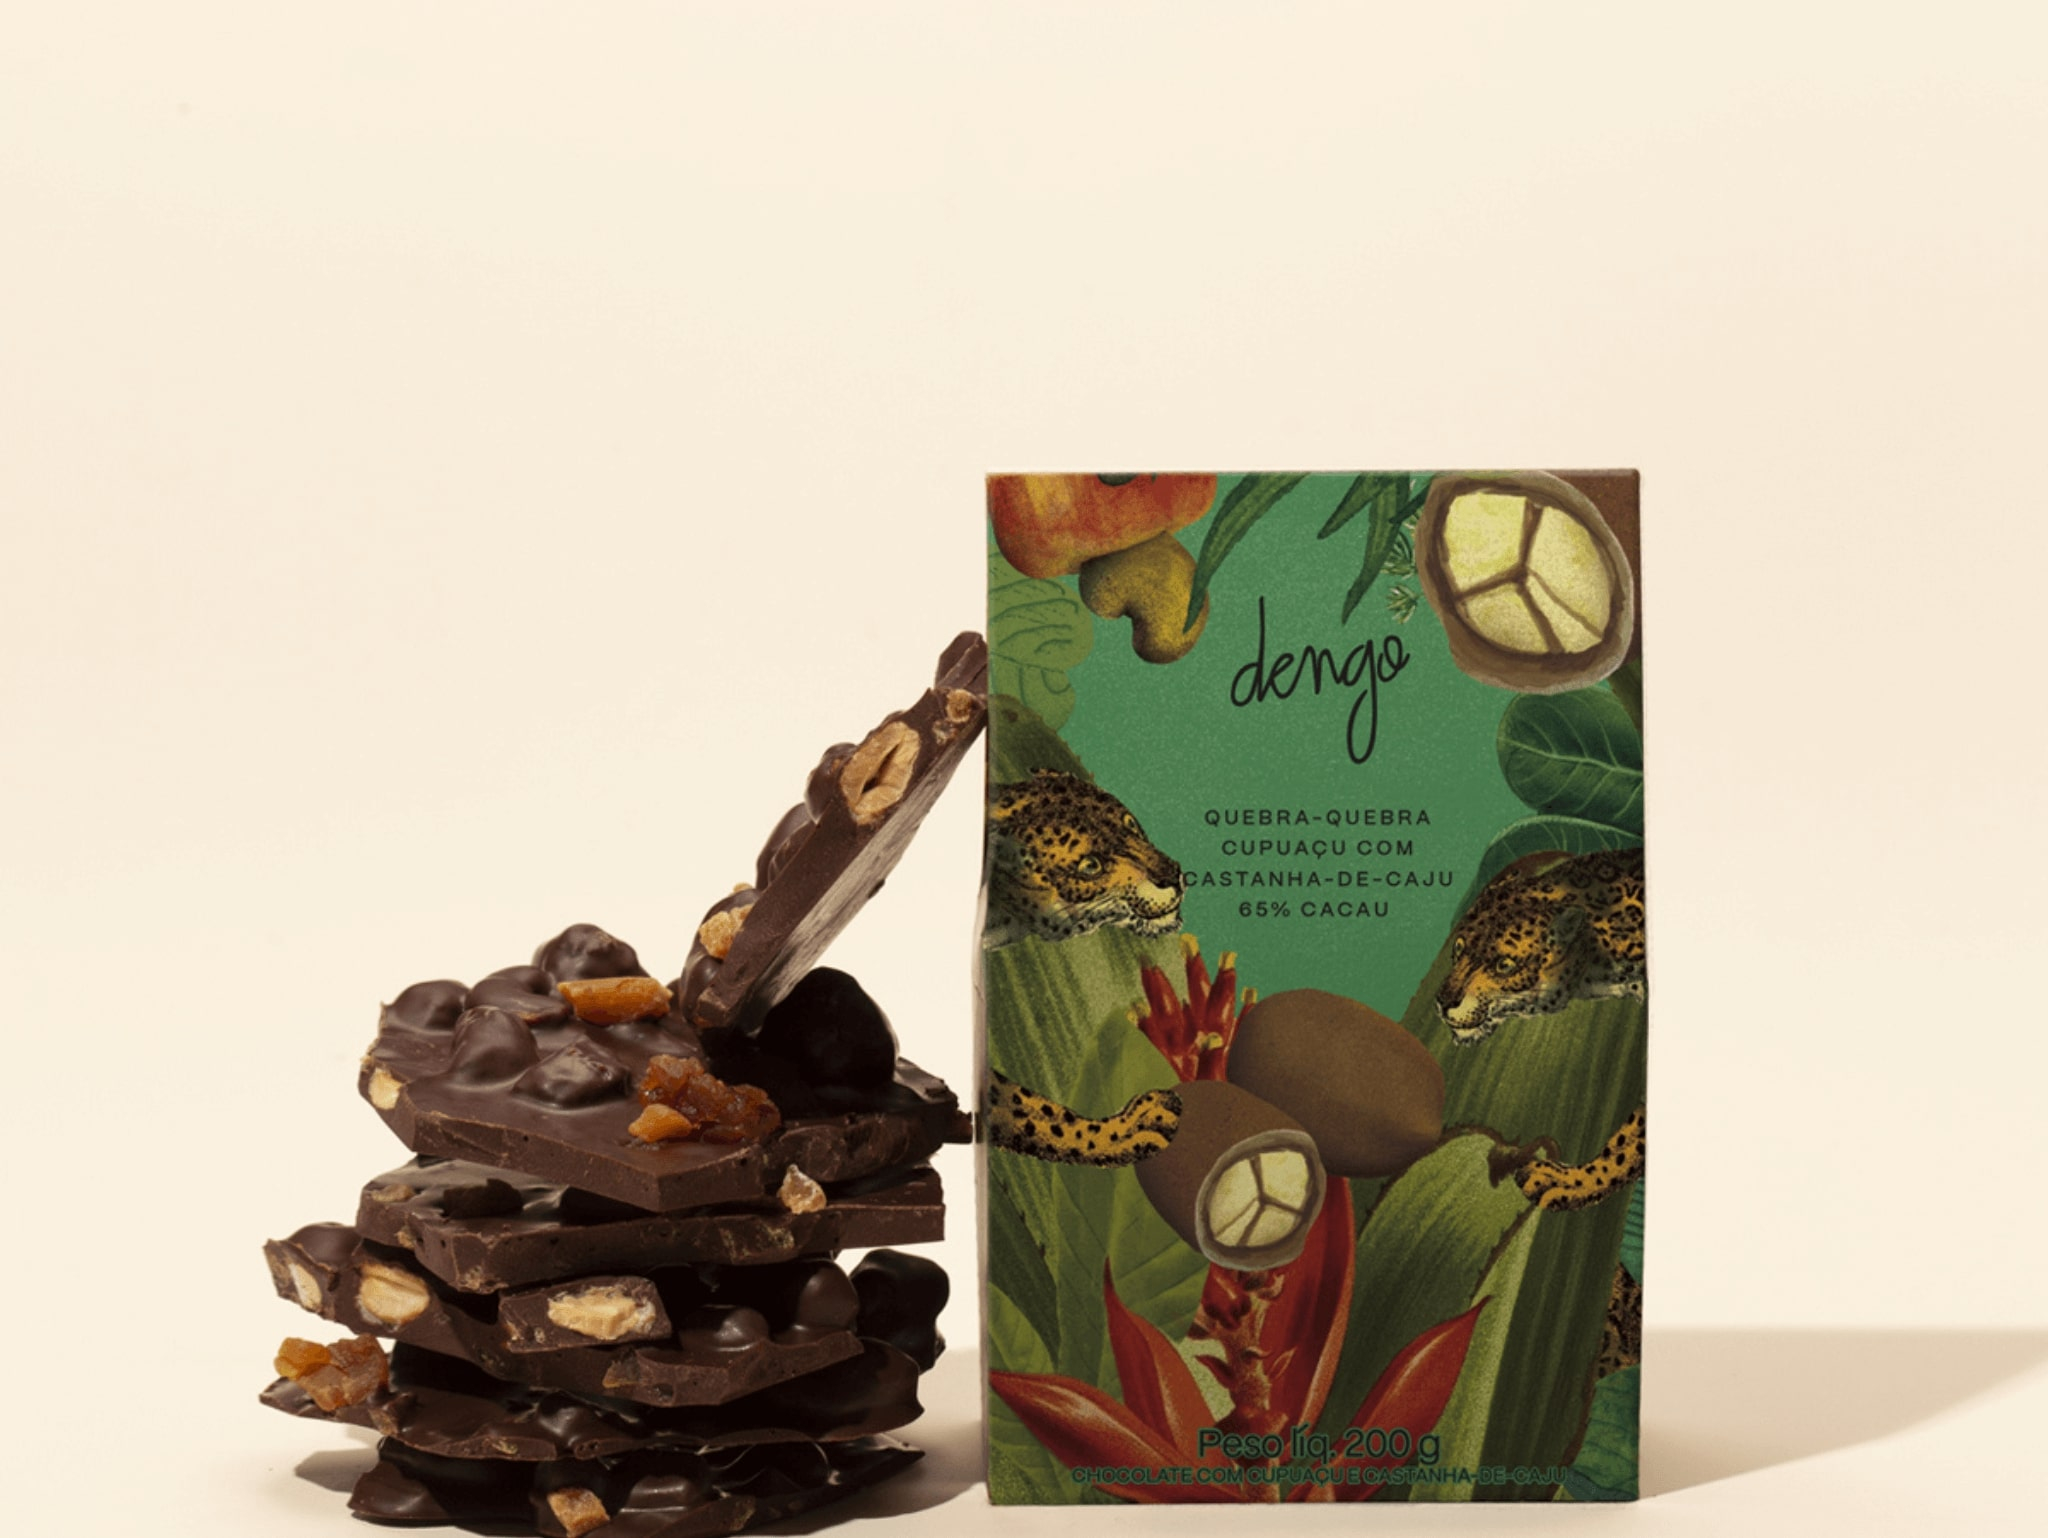 Chocolate Quebra-Quebra Cupuaçu com Castanha de Caju 200G